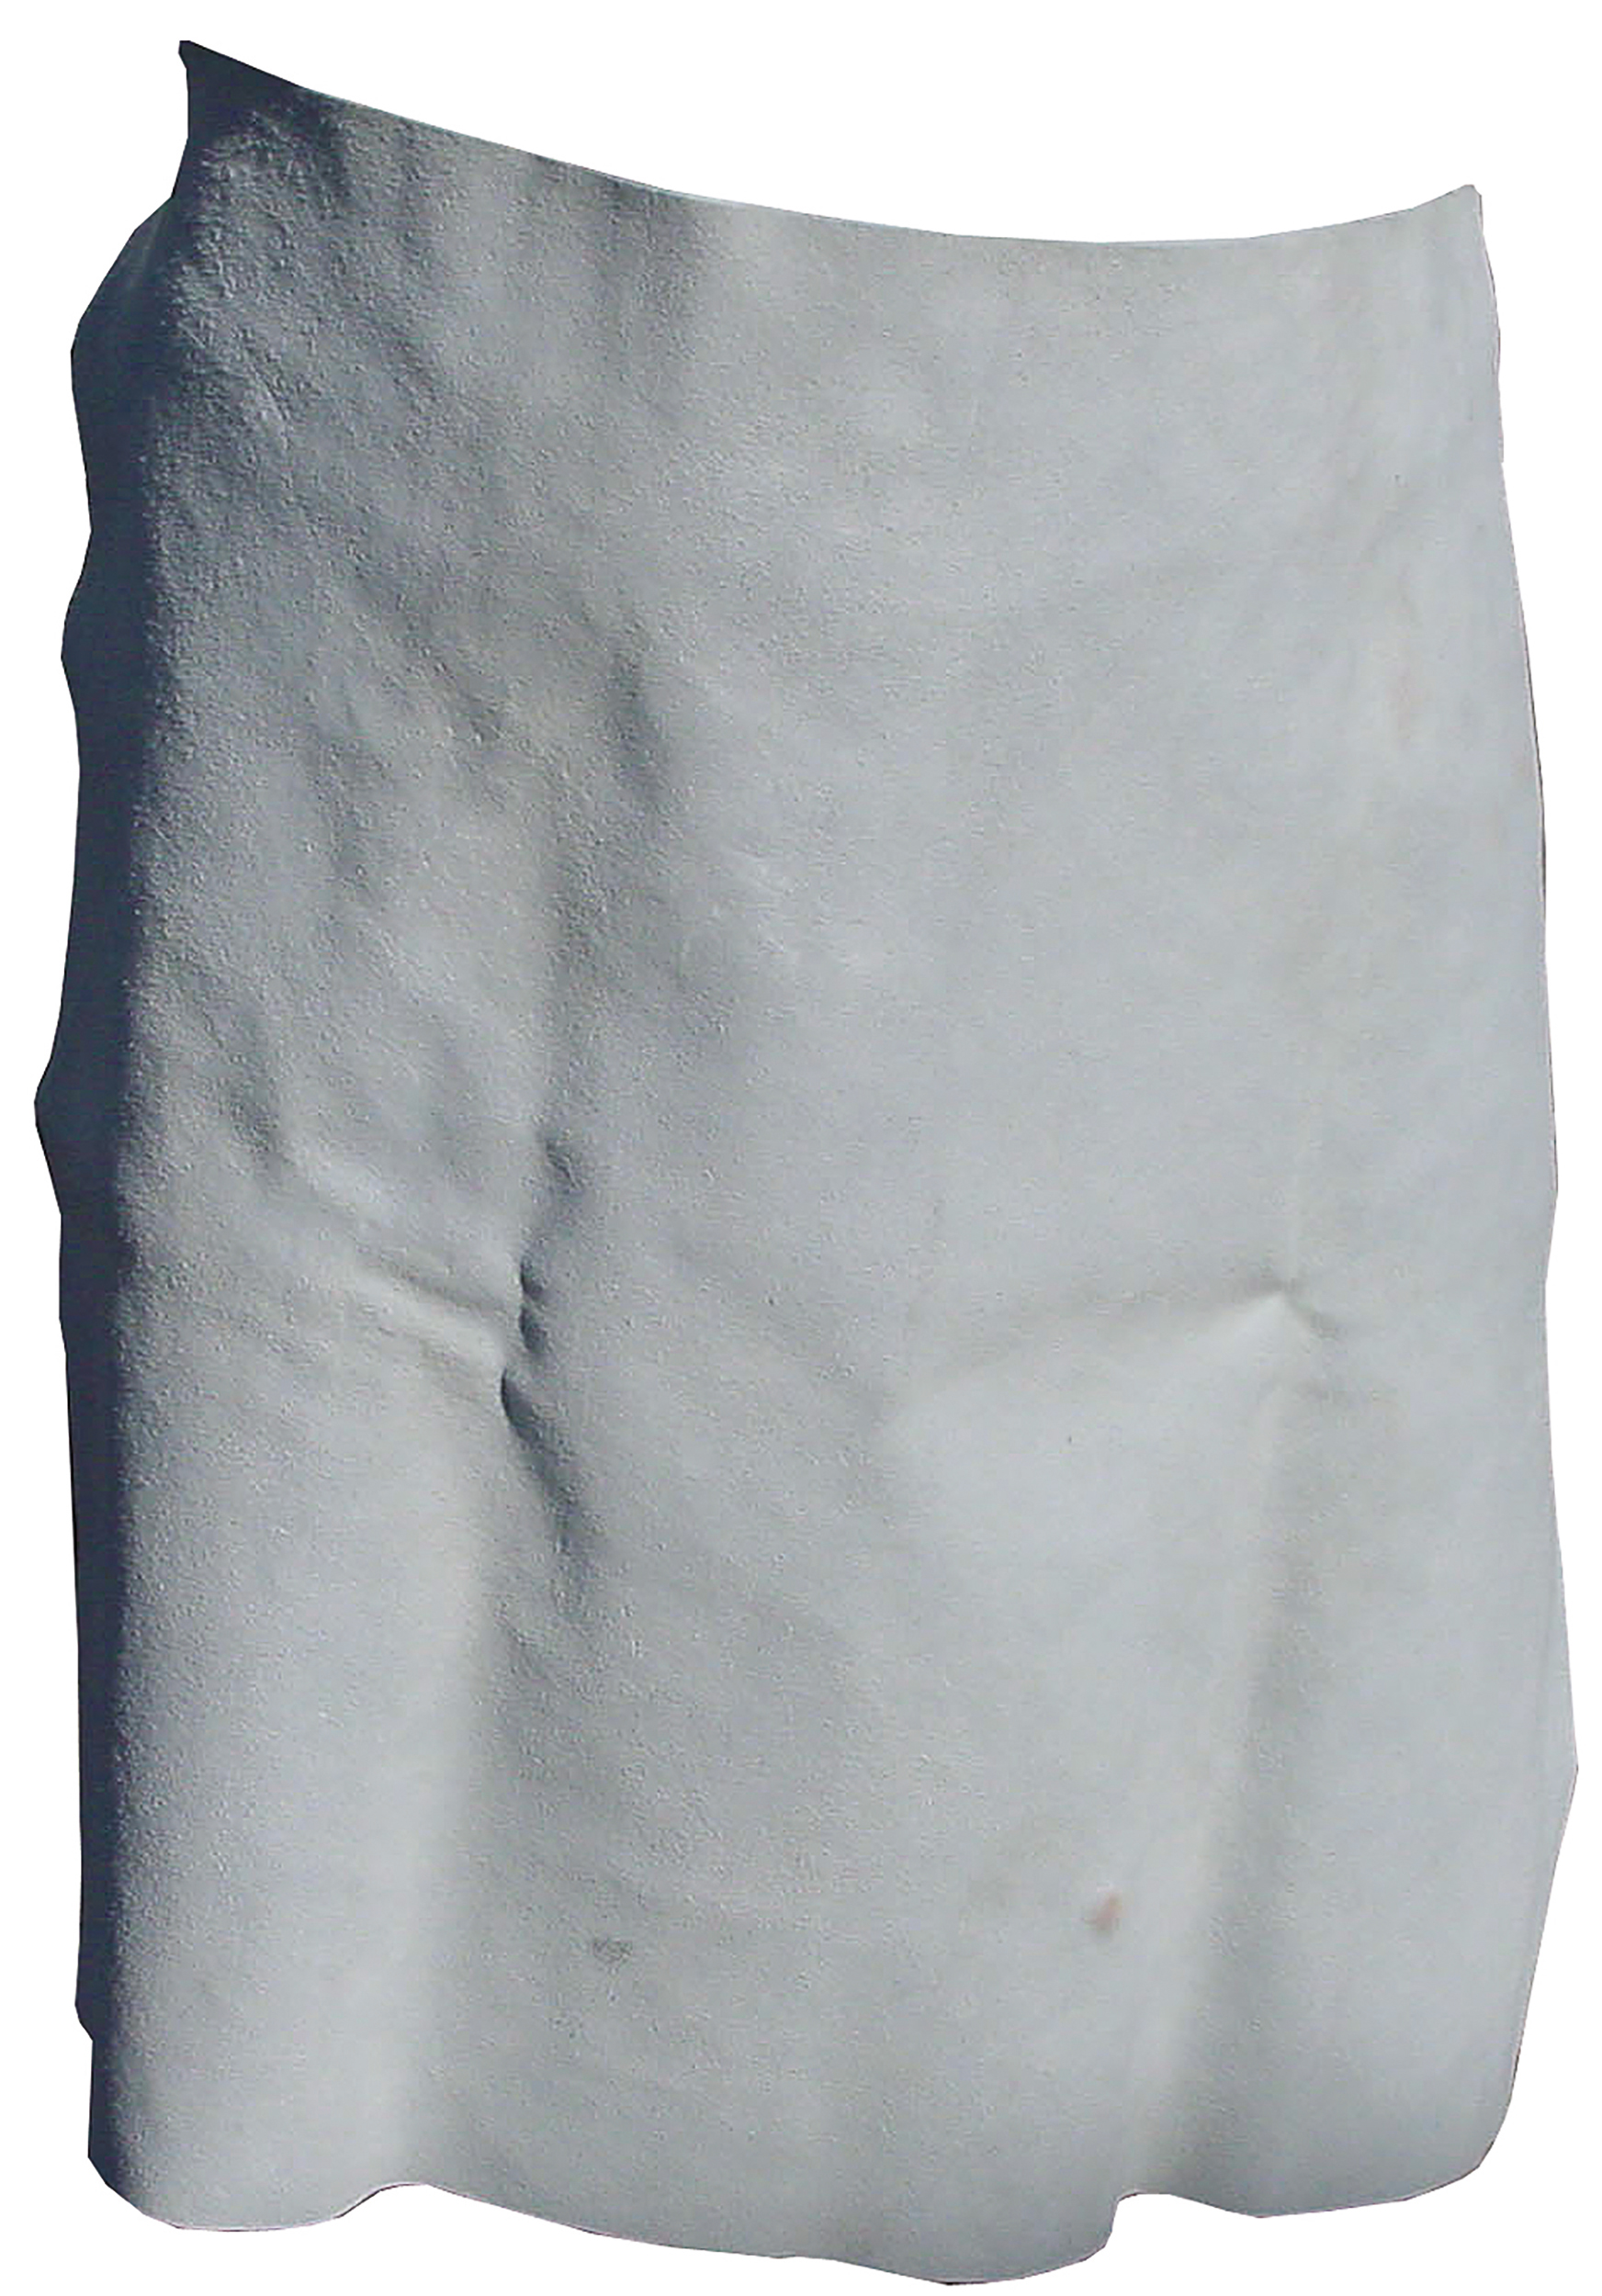 Schweisserschürze ohne Brustlatz, 70x60 cm, Spaltleder, Lederst. 1,4-1,8 mm